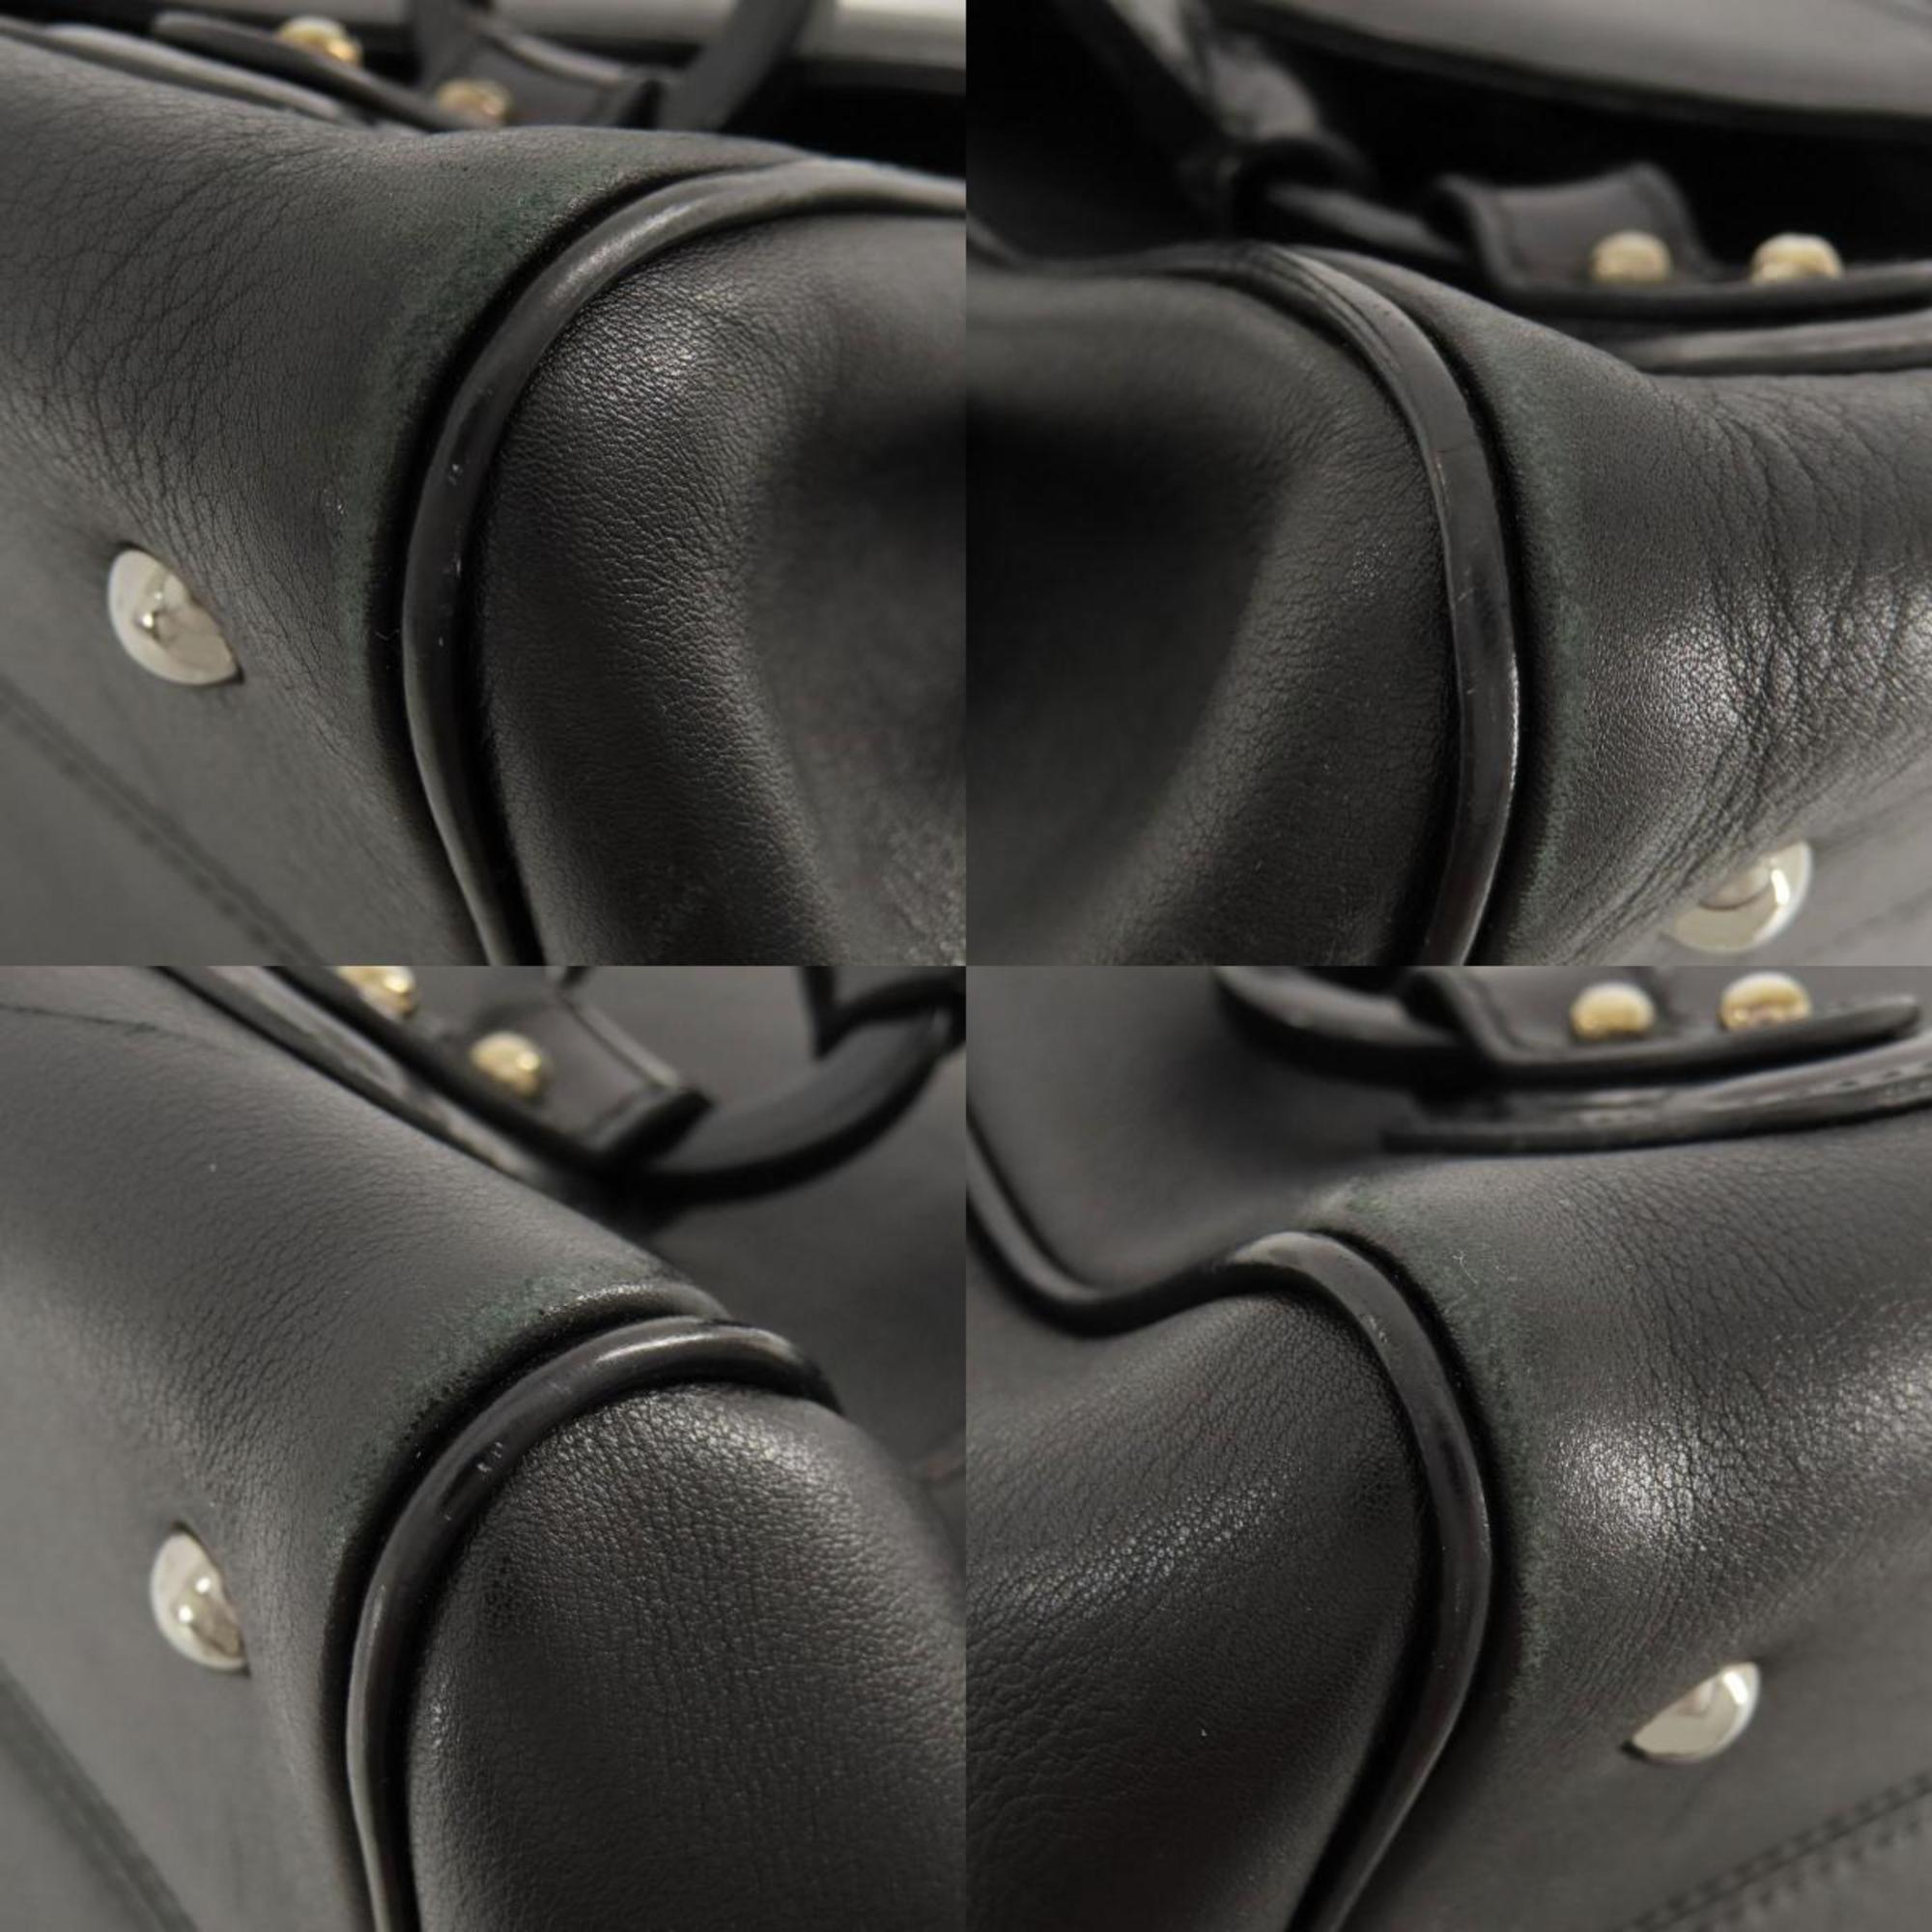 Salvatore Ferragamo Gancini motif handbag leather ladies